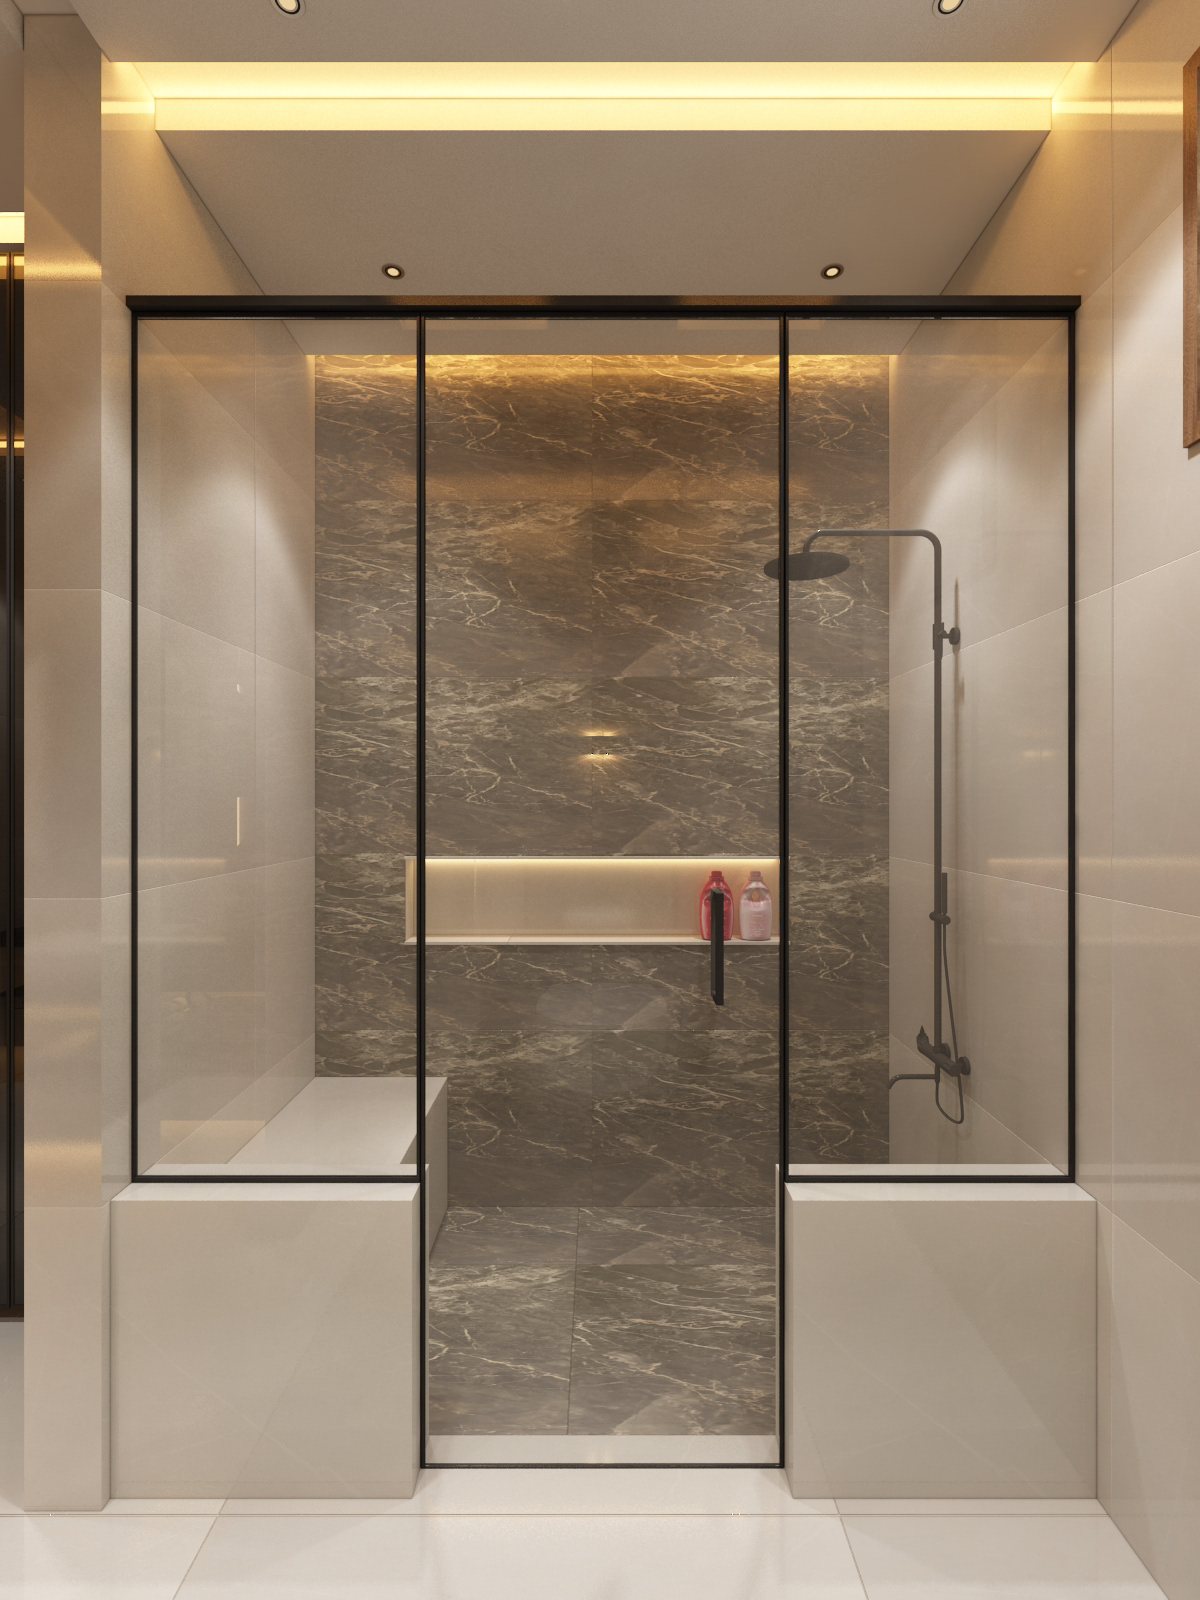 bathroom architecture interior design  vanity wardrobes mirror reflection modernbathroomdesign